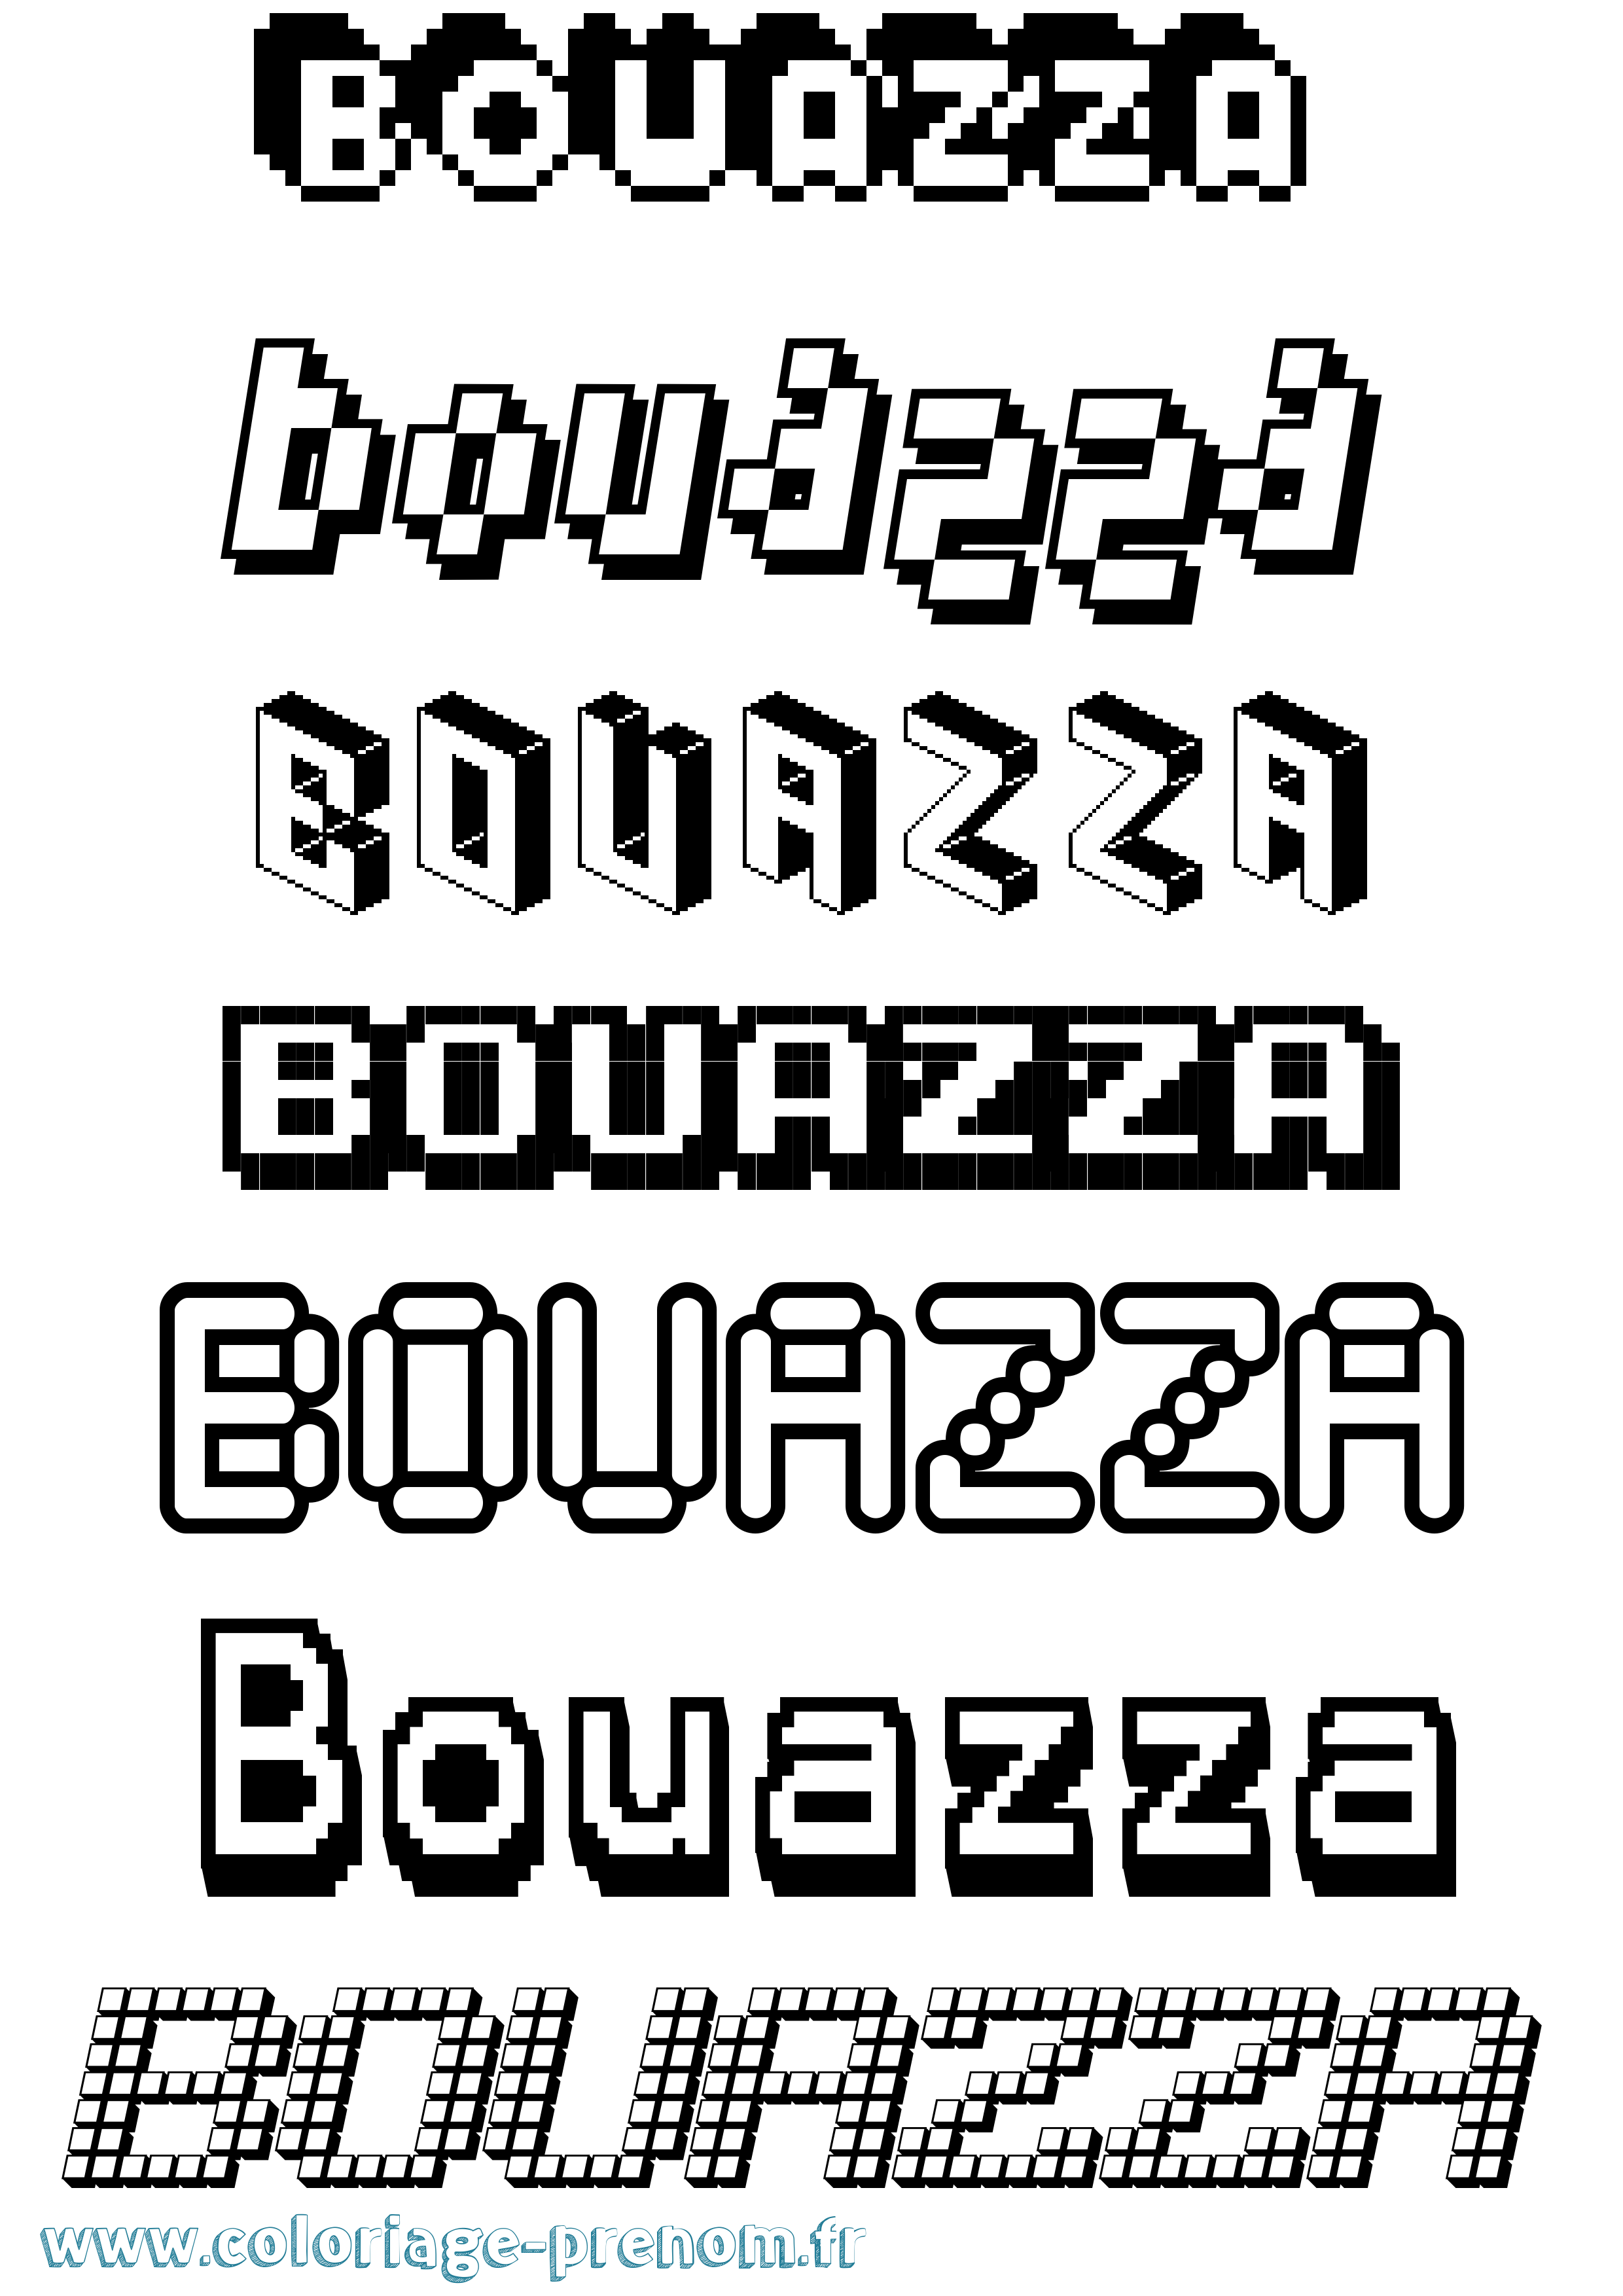 Coloriage prénom Bouazza Pixel